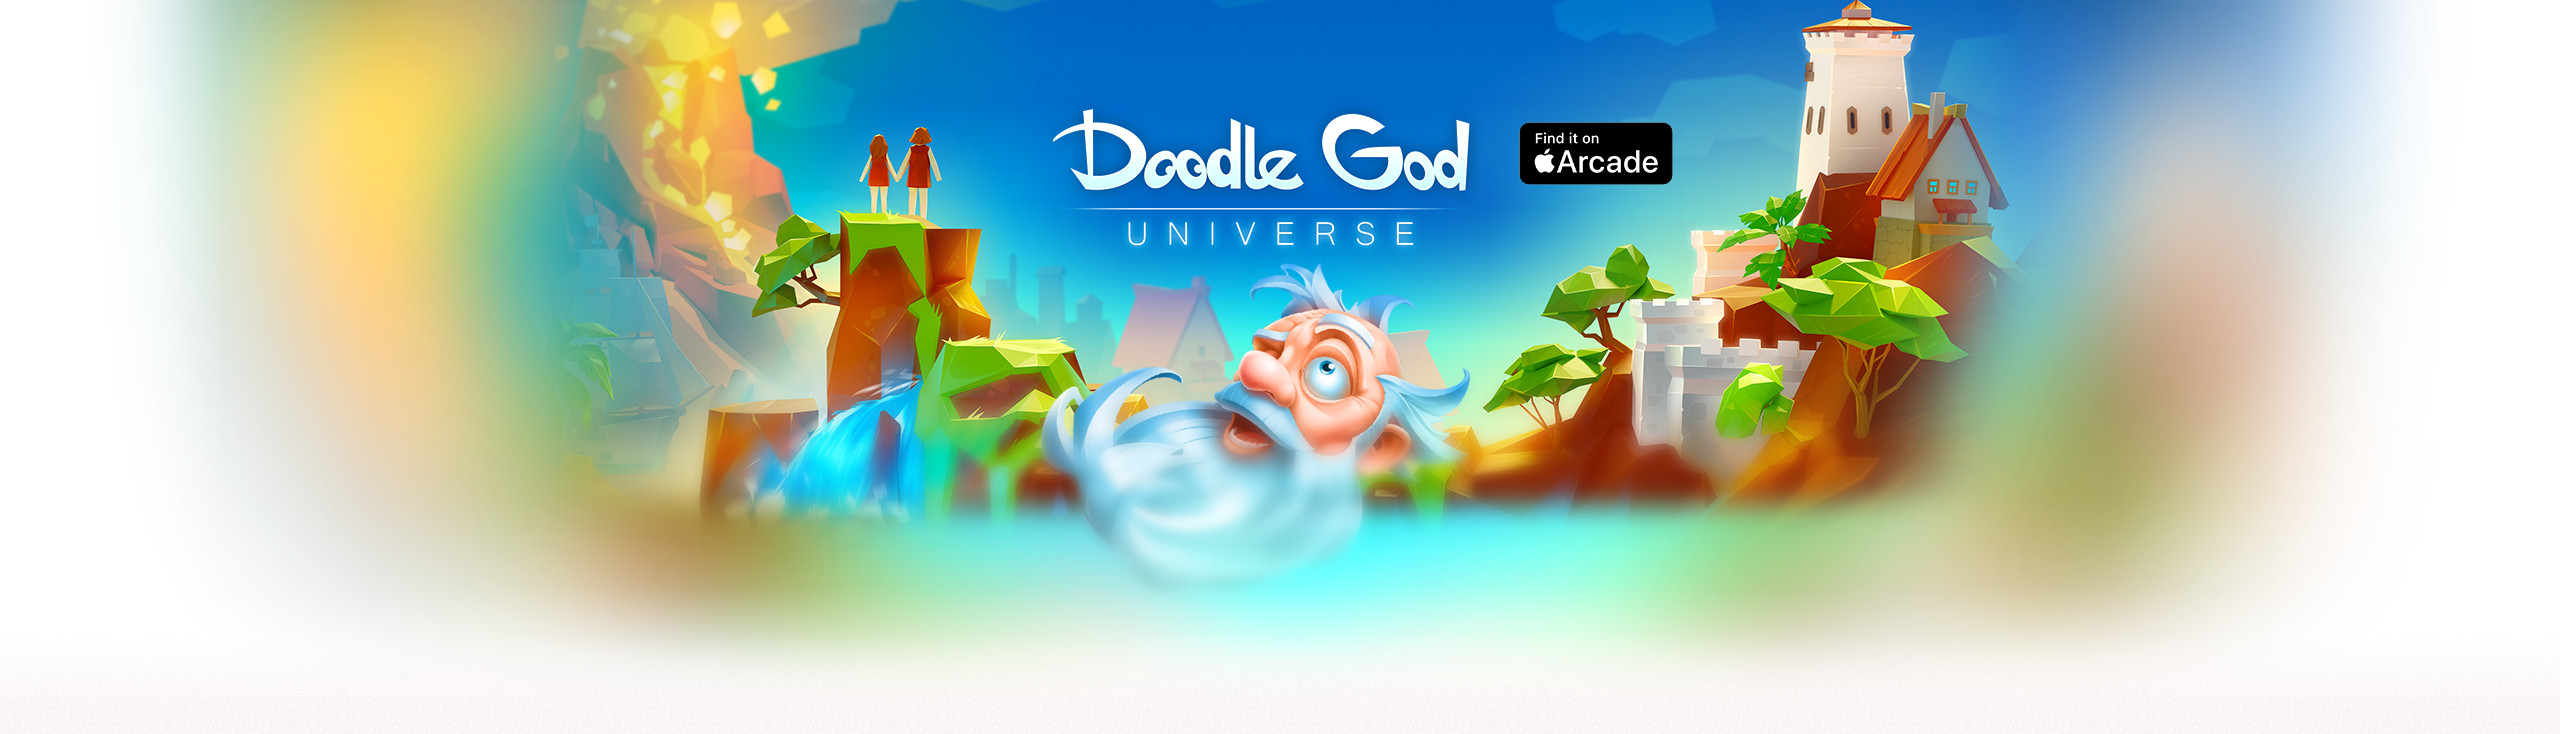 doodle god games online